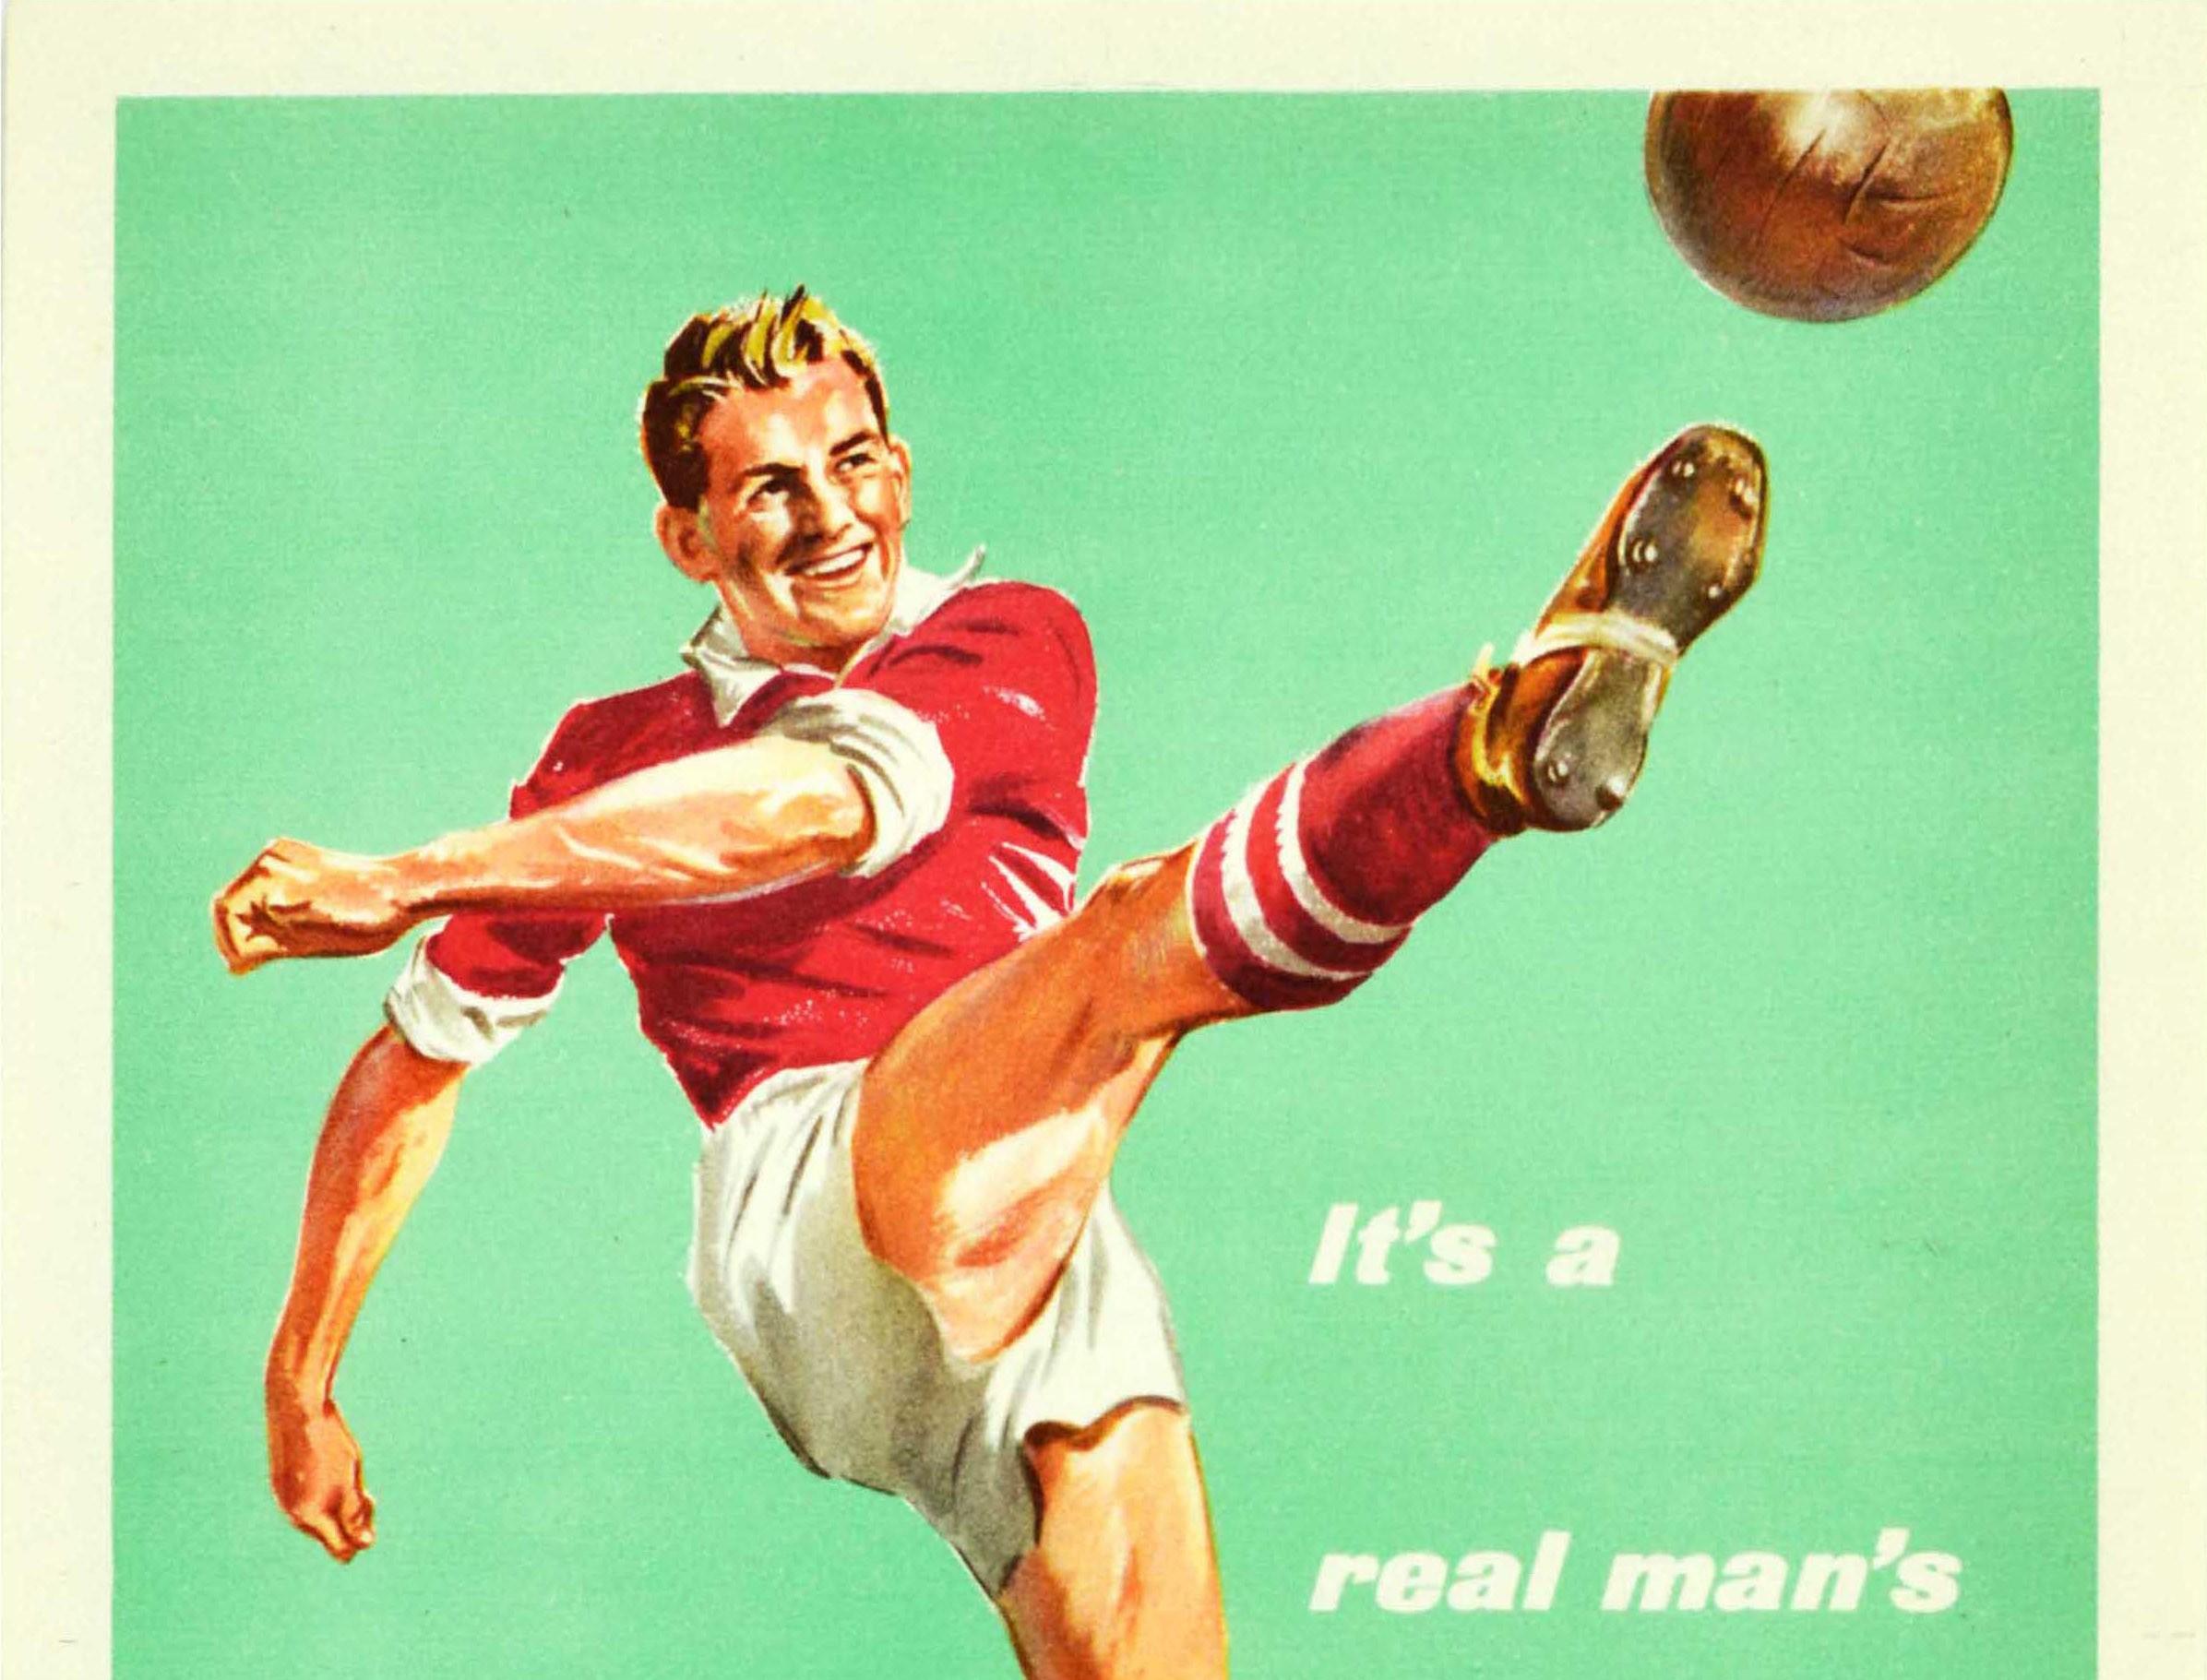 Affiche de recrutement militaire vintage originale de l'armée britannique - Join the Regular Army - représentant un homme souriant dans un kit de football rouge et blanc tapant dans un ballon sur un fond vert pâle à côté du slogan en blanc - It's a